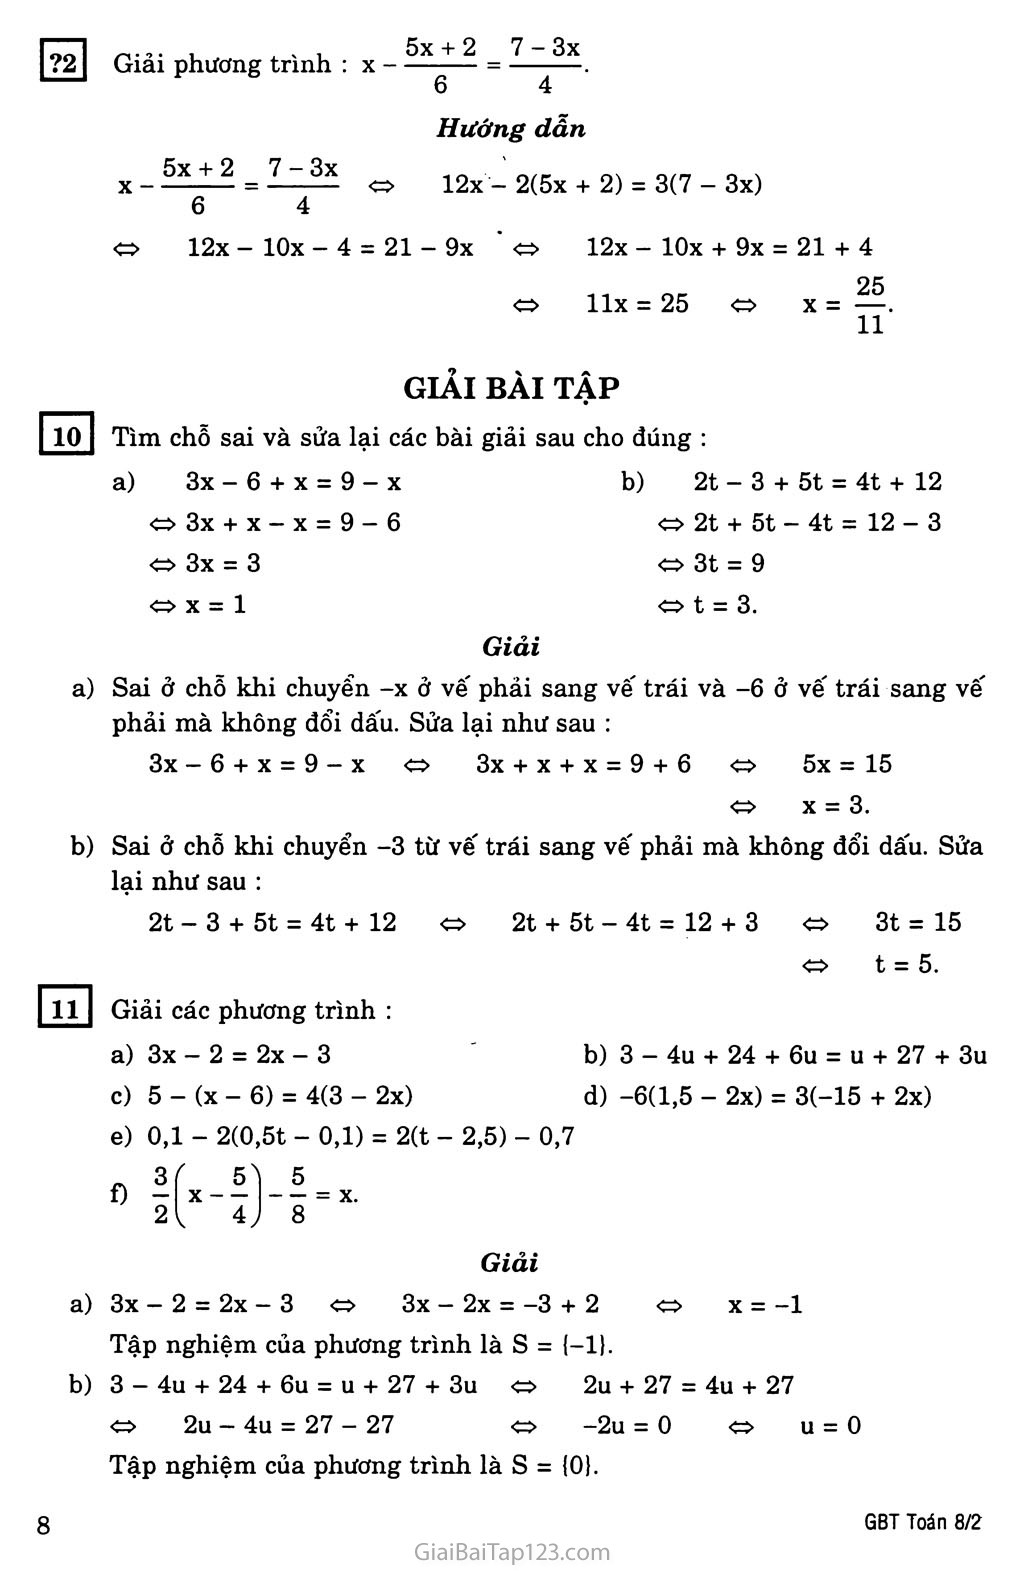 §3. Phương trình đưa được về dạng ax + b = 0 trang 2